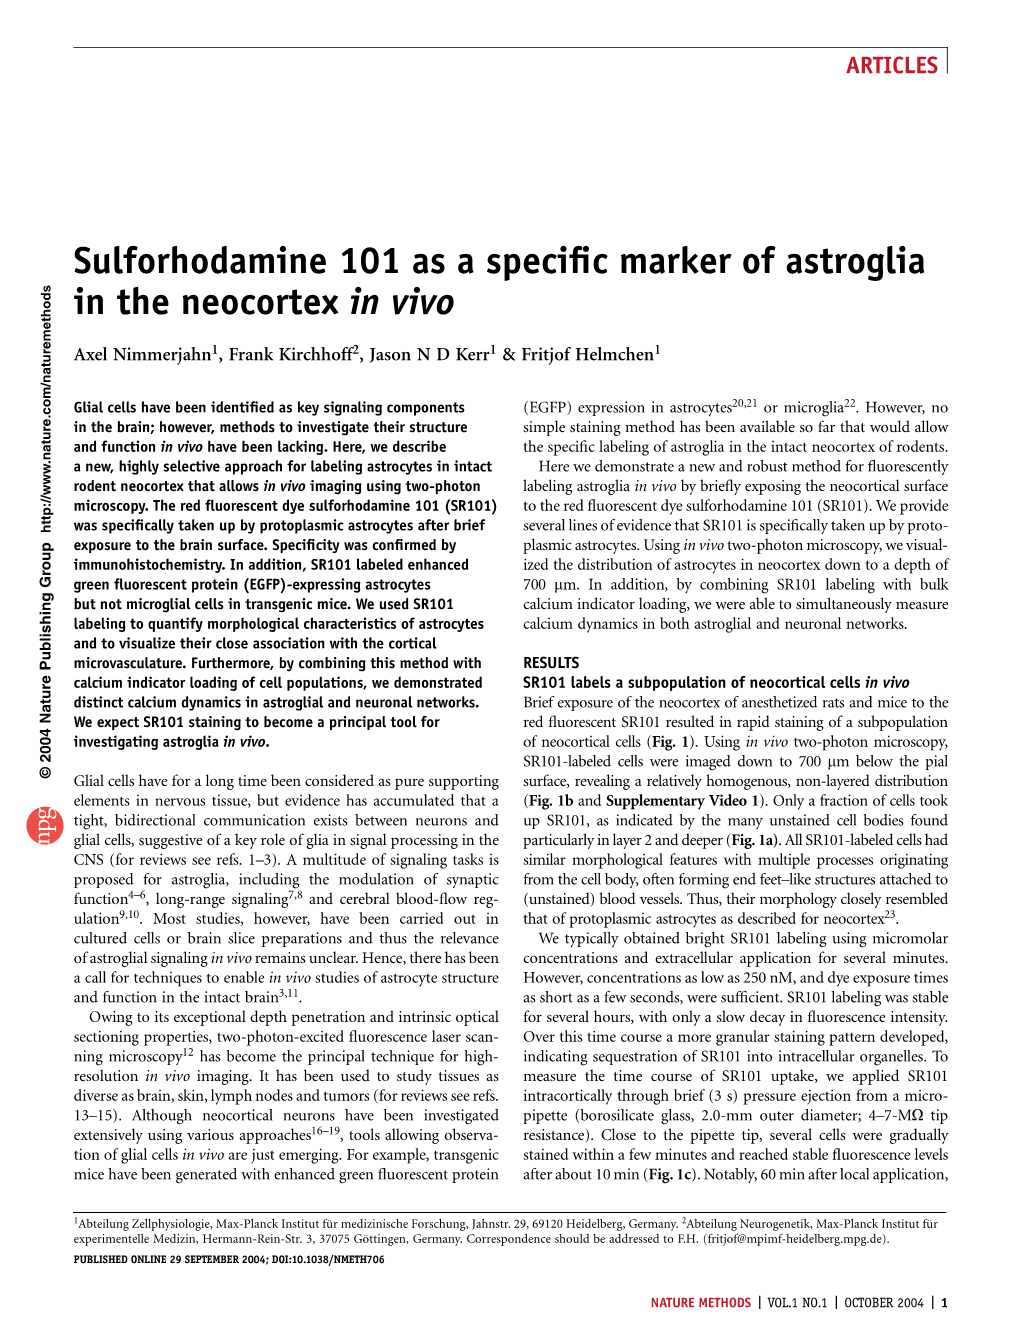 Sulforhodamine 101 As a Specific Marker of Astroglia in the Neocortex in Vivo